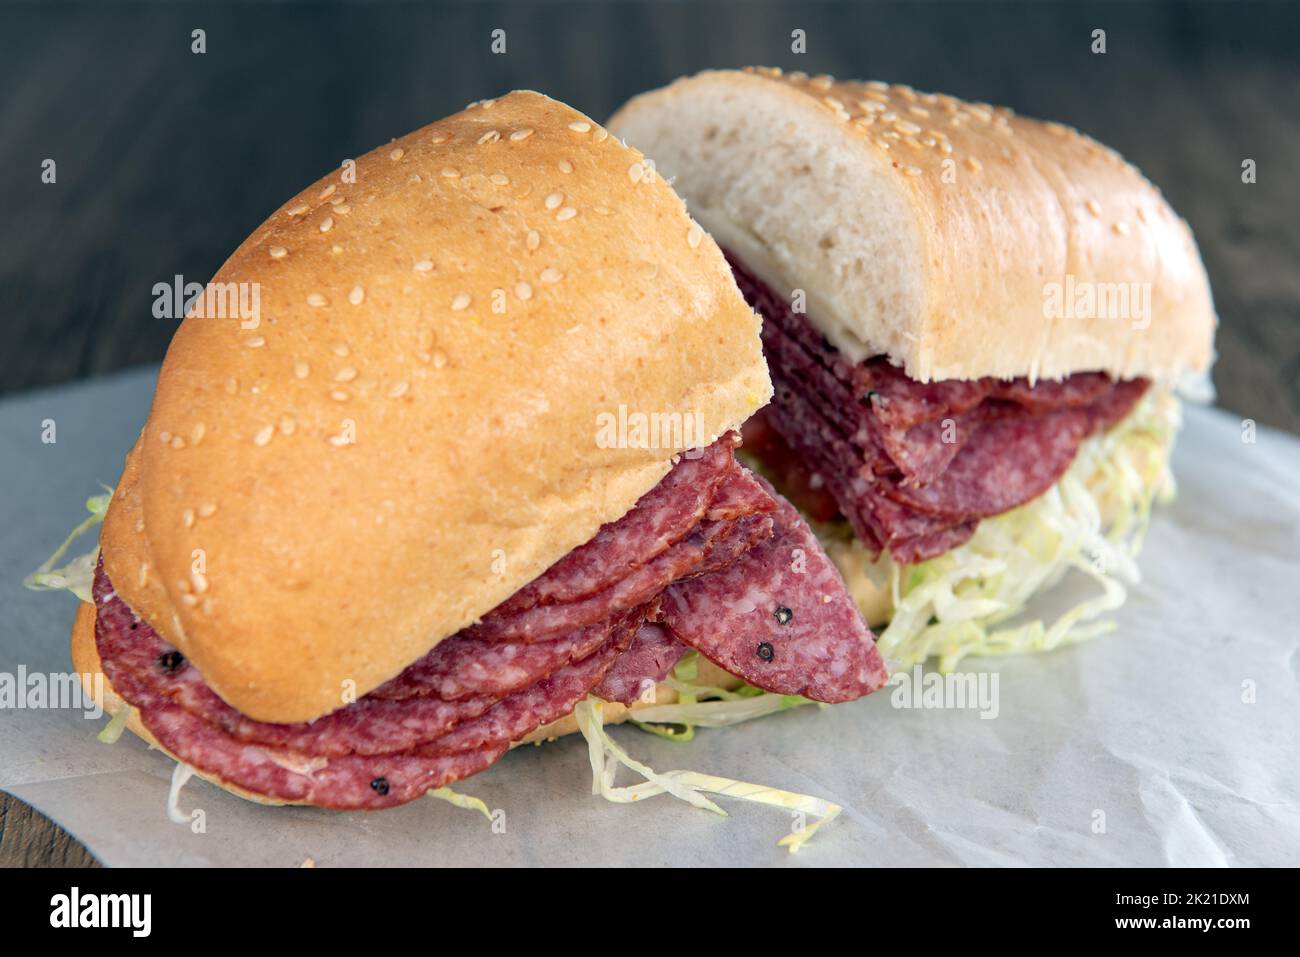 Das Mittagessen wird mit einem geladenen Salami-Sandwich serviert, das mit Rosensalat überfüllt ist. Stockfoto